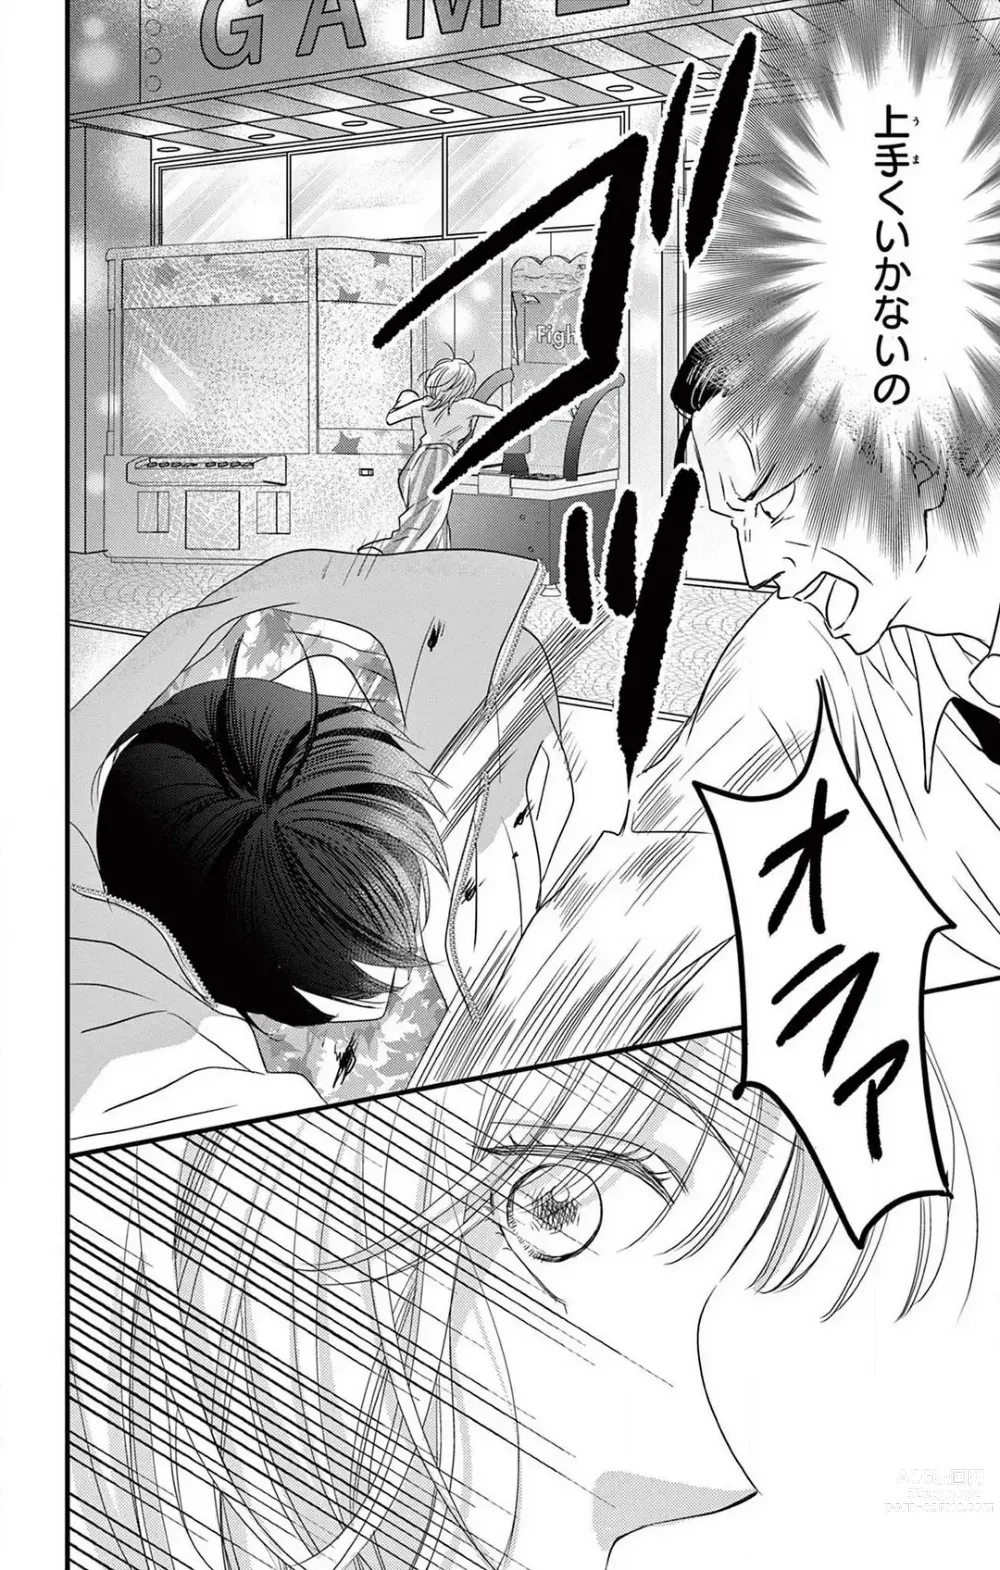 Page 10 of manga Kuzu wa Kuzu Demo Kao ga ii Kuzu 1-7